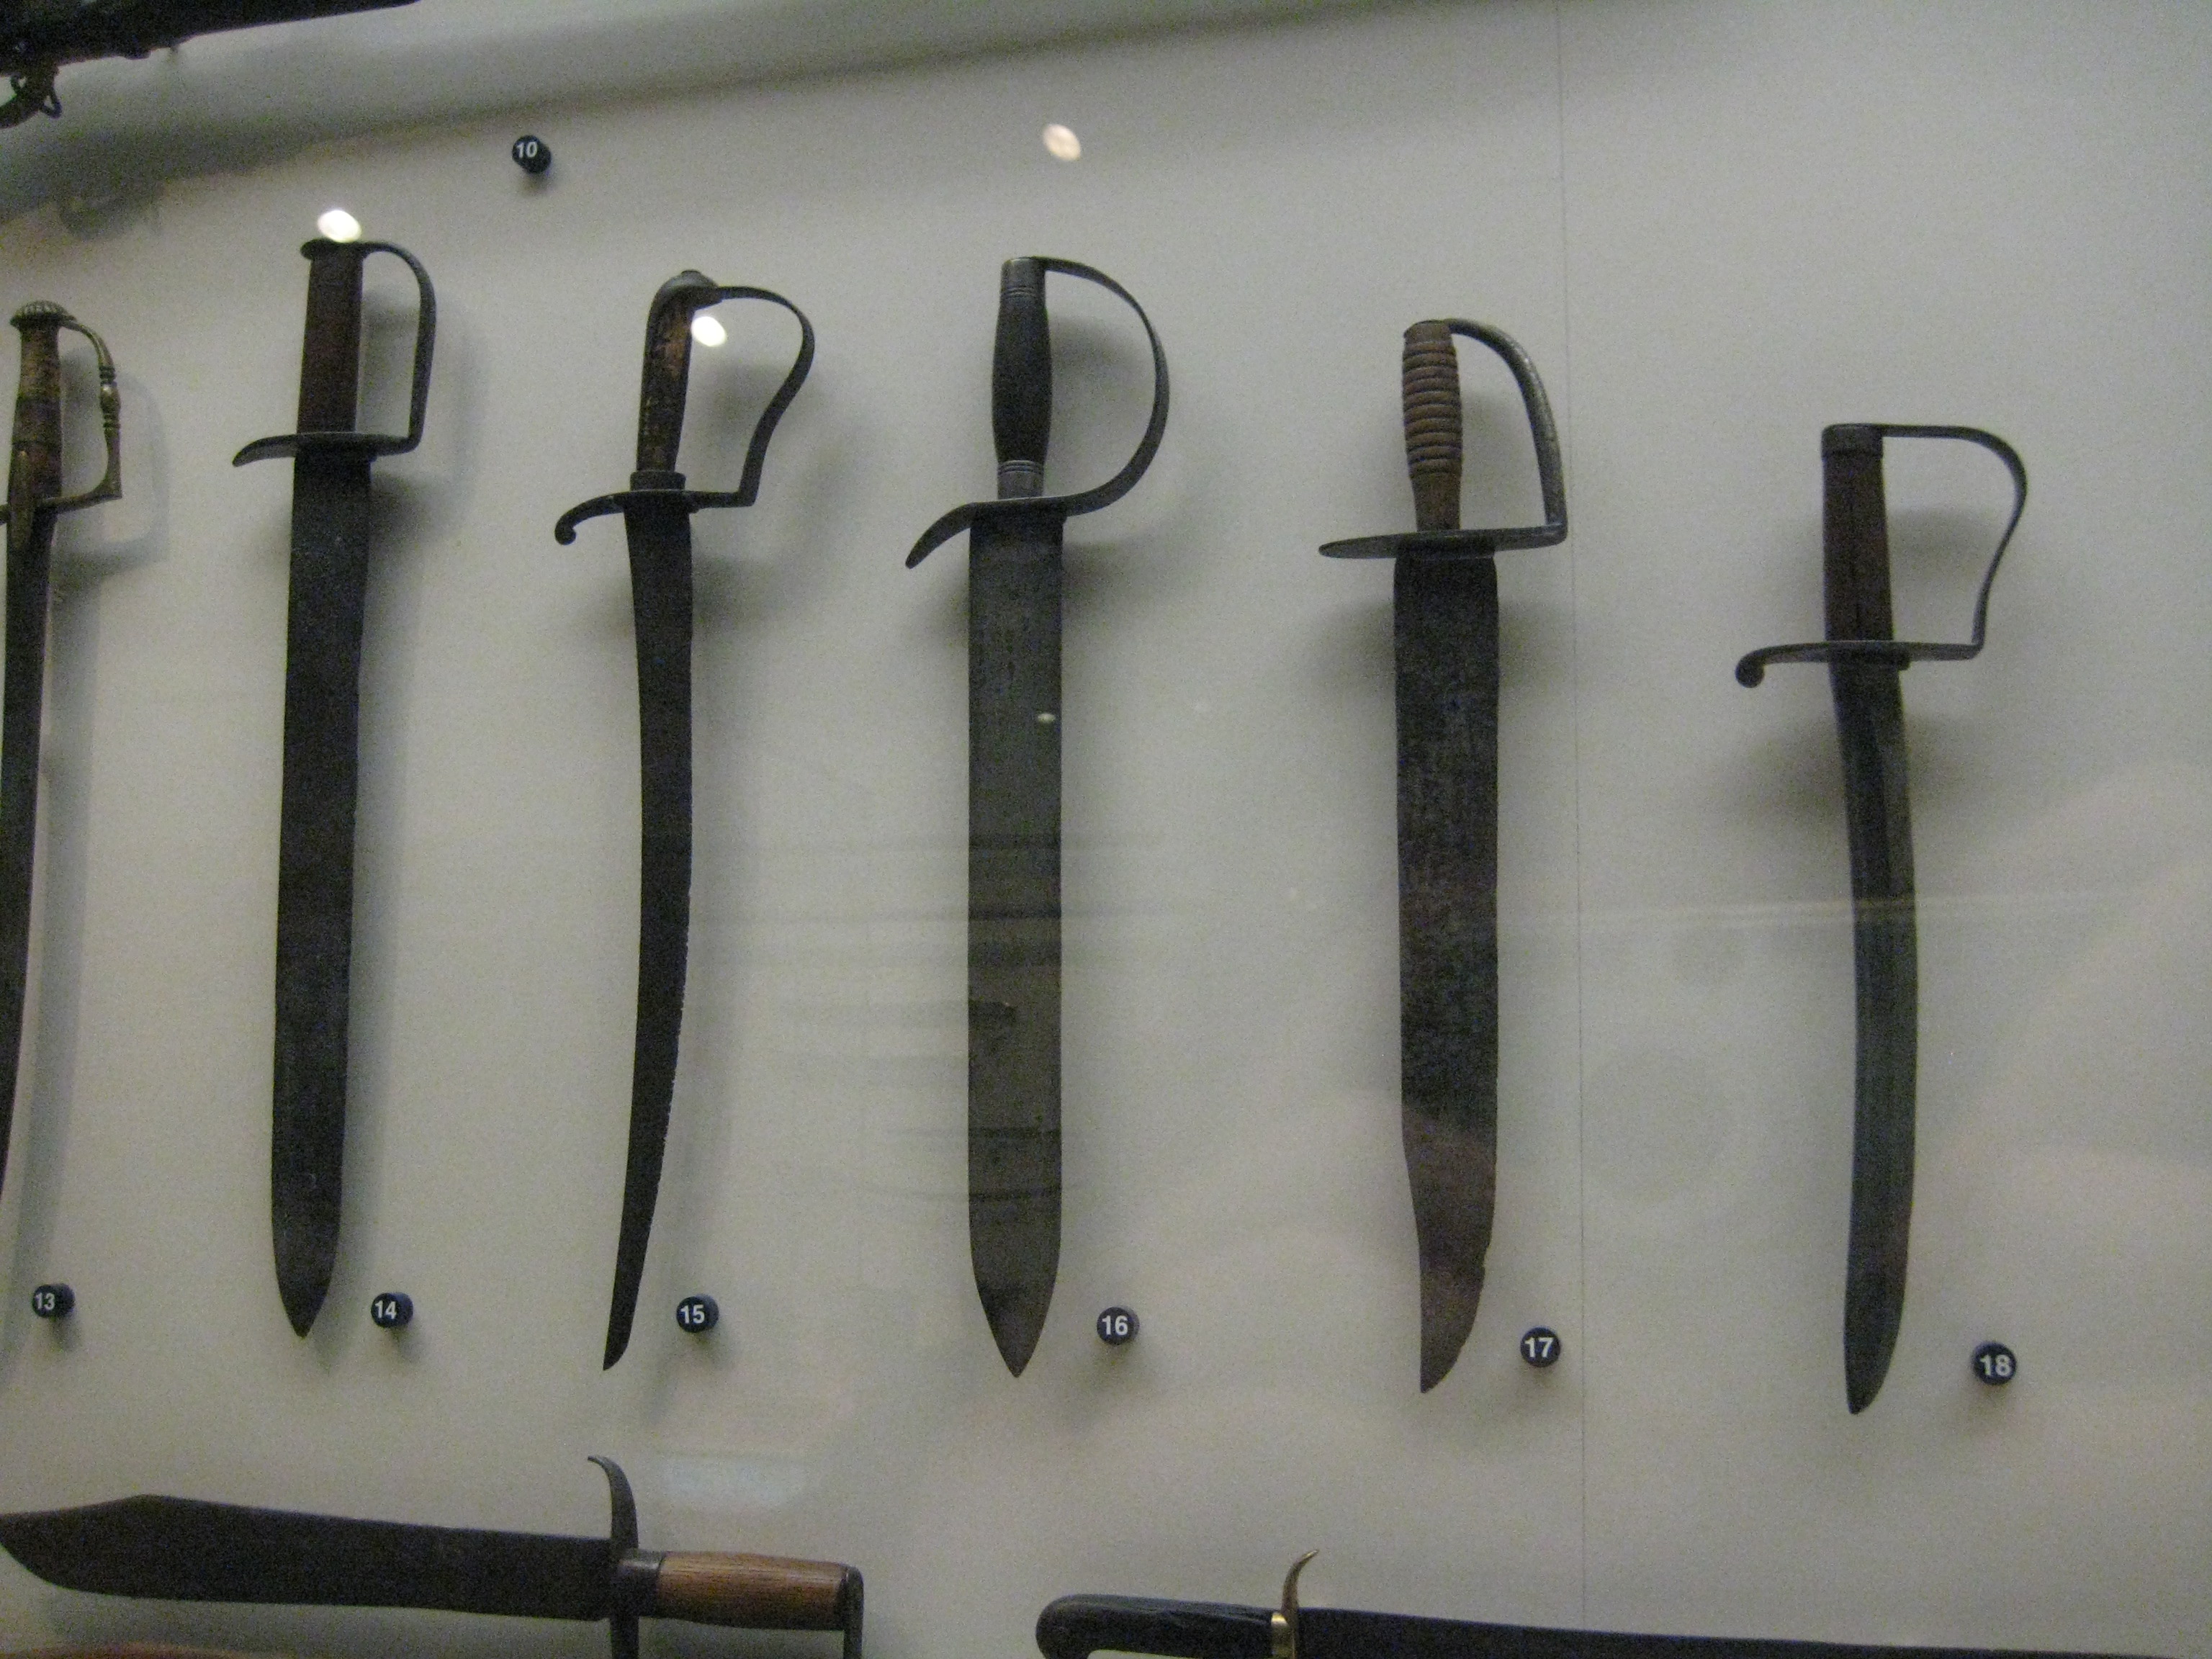 Five Confederate Knives - Confederate D Guard Sword , HD Wallpaper & Backgrounds